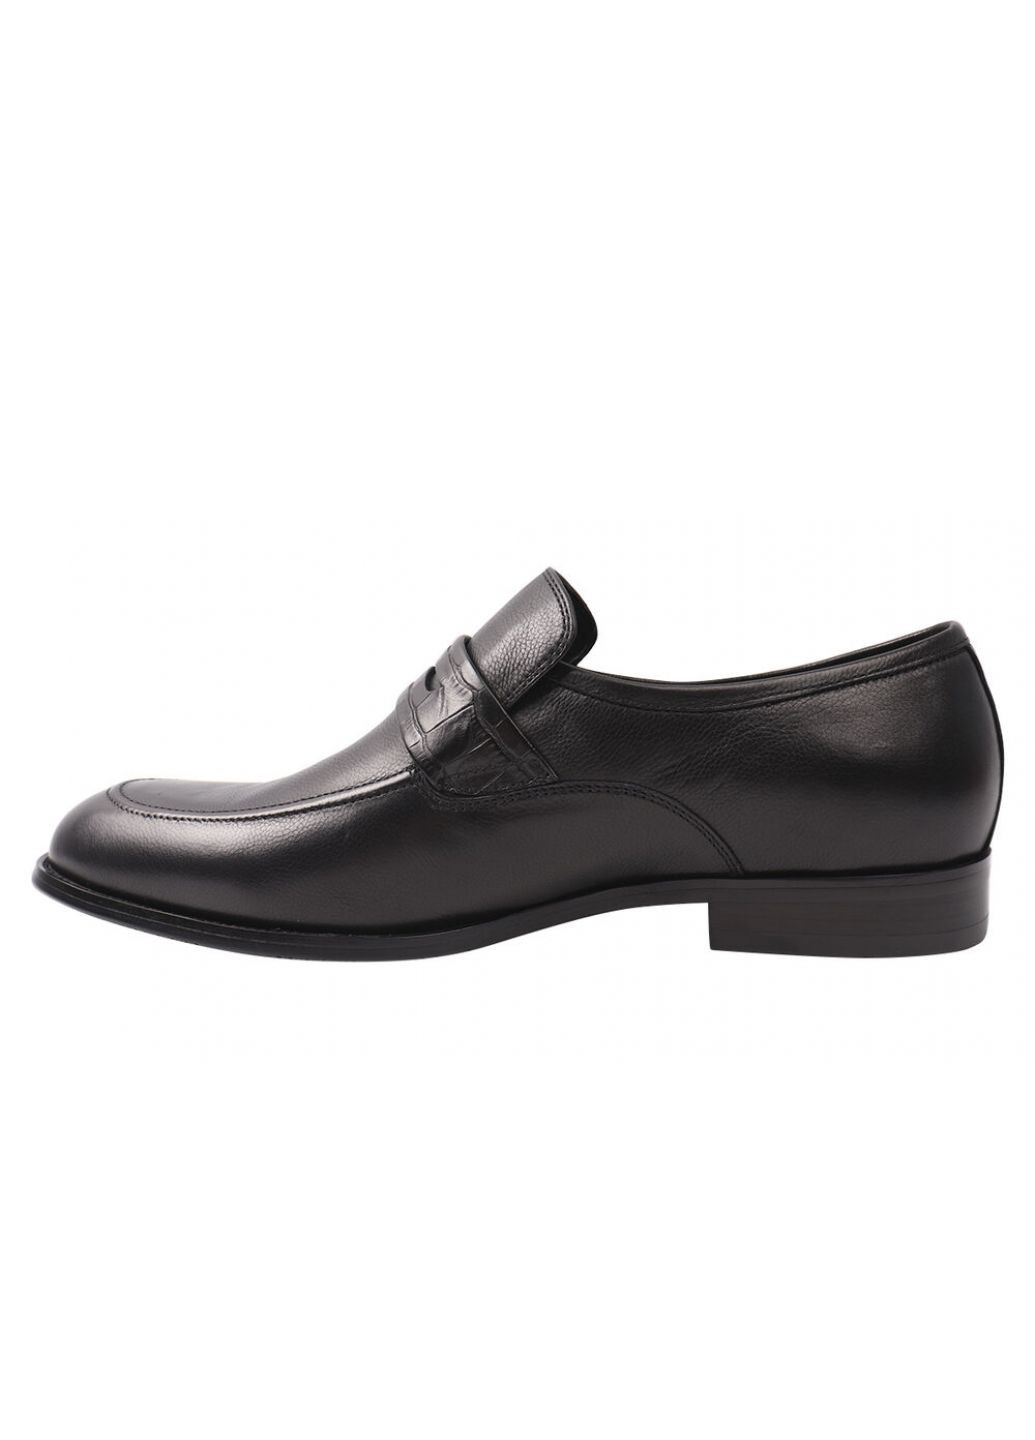 Черные туфли мужские из натуральной кожи, на низком ходу, цвет черный, Brooman